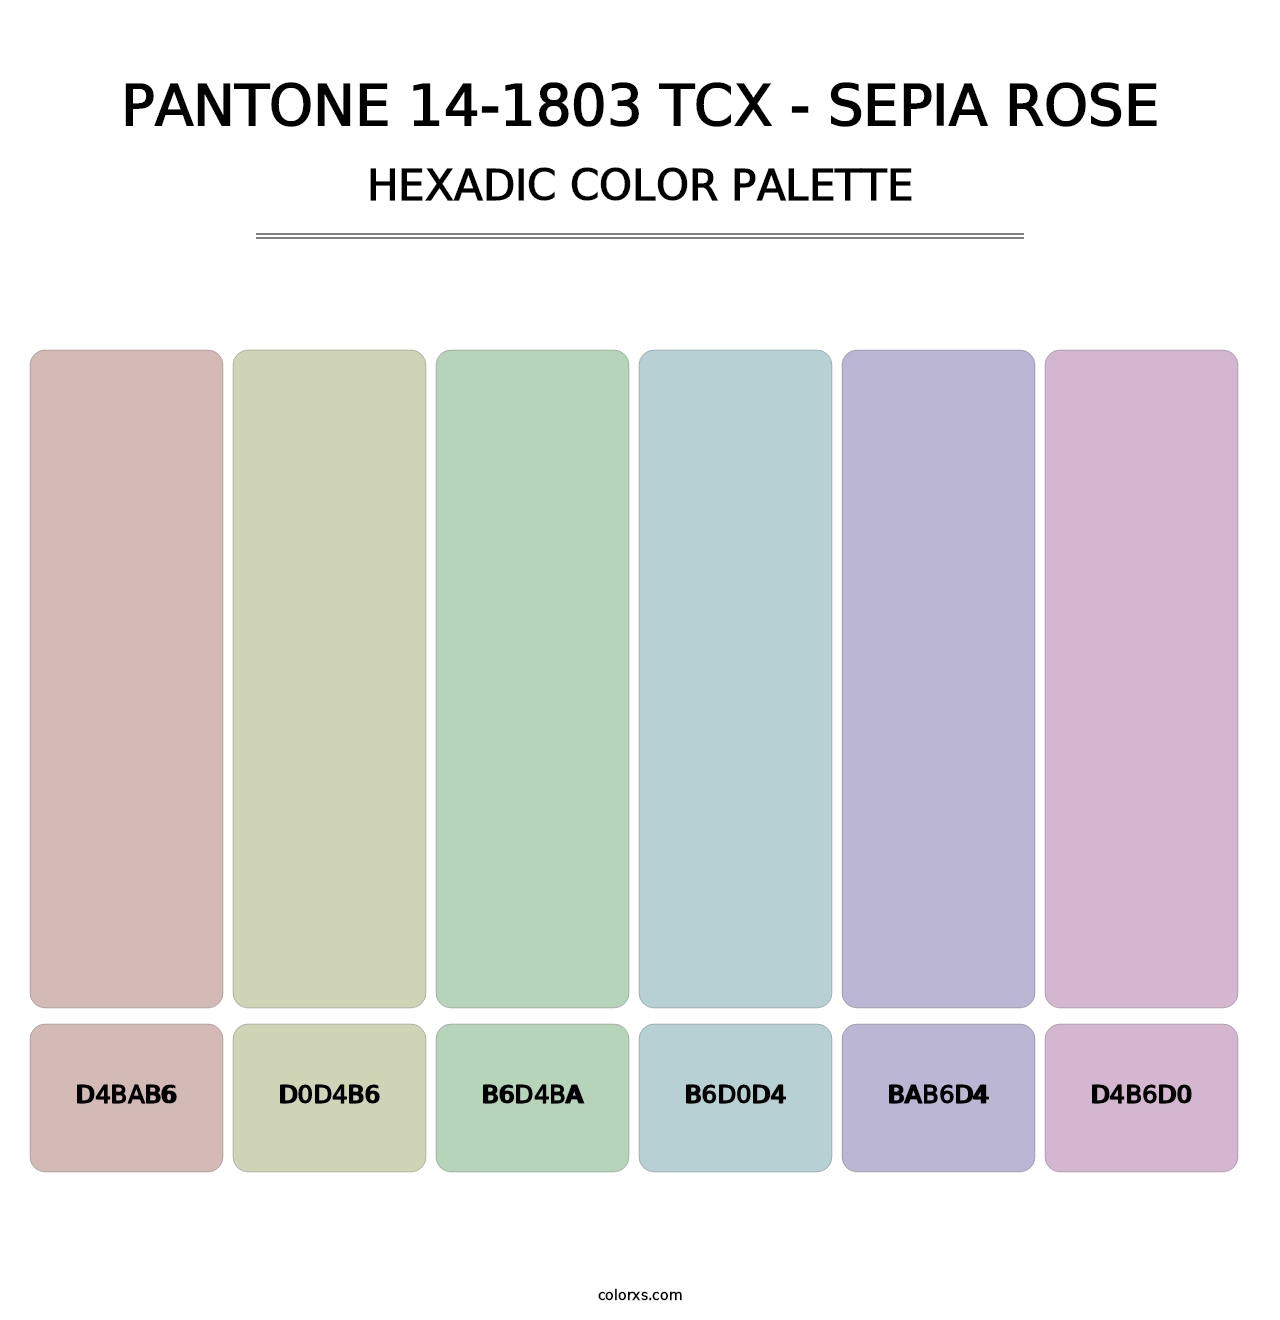 PANTONE 14-1803 TCX - Sepia Rose - Hexadic Color Palette